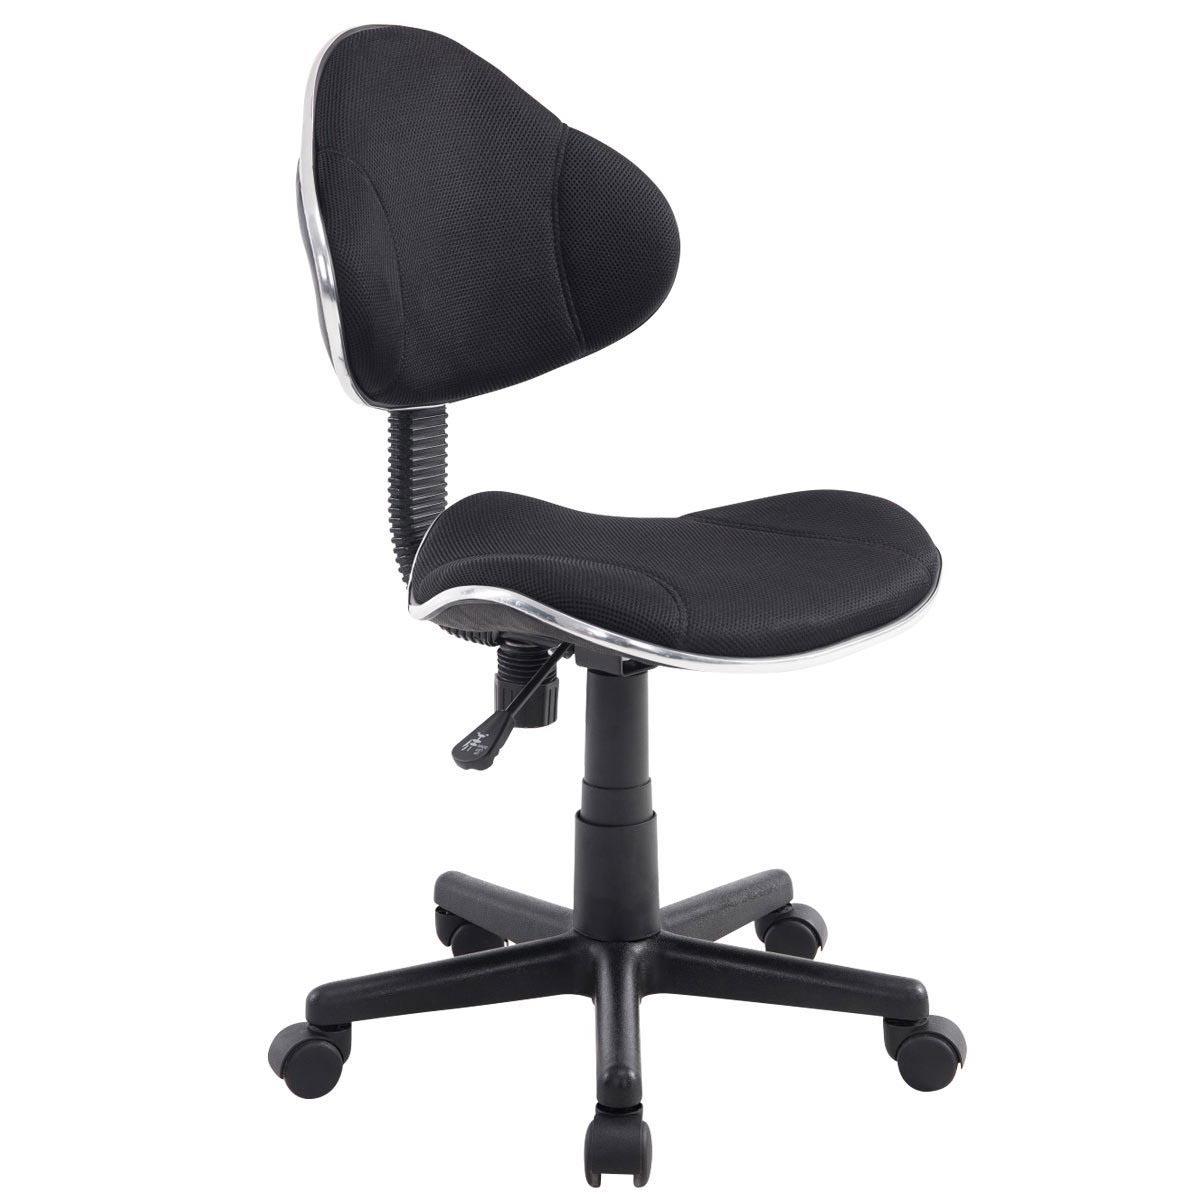 Silla escritorio Juvenil BASTER, gran calidad, acolchado con tejido en malla transpirable, color negro